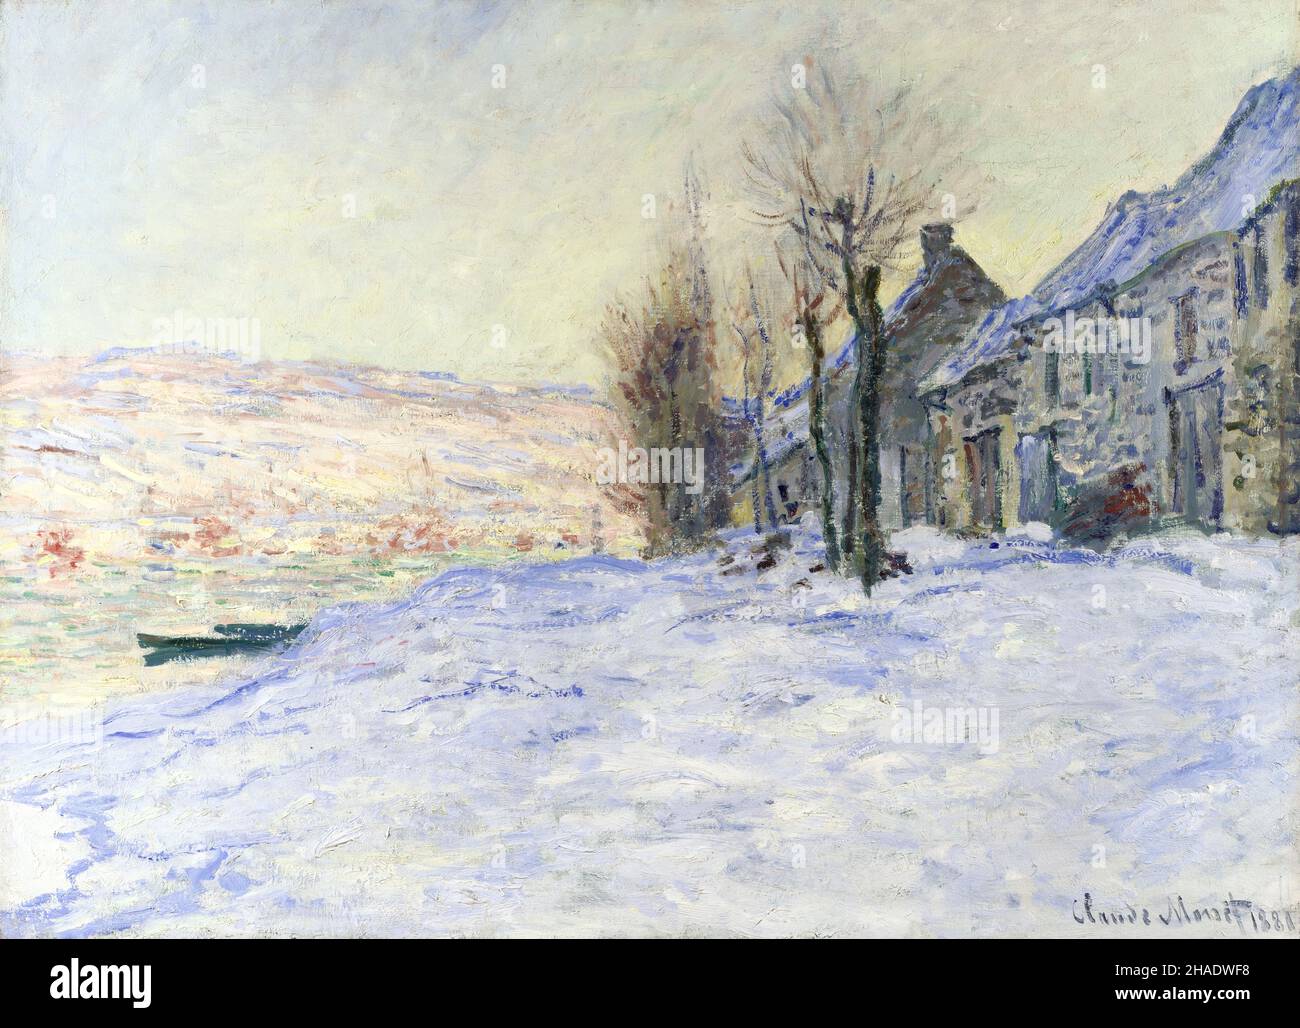 Lavacourt under Snow von Claude Monet (1840-1926), Öl auf Leinwand, 1881 Stockfoto